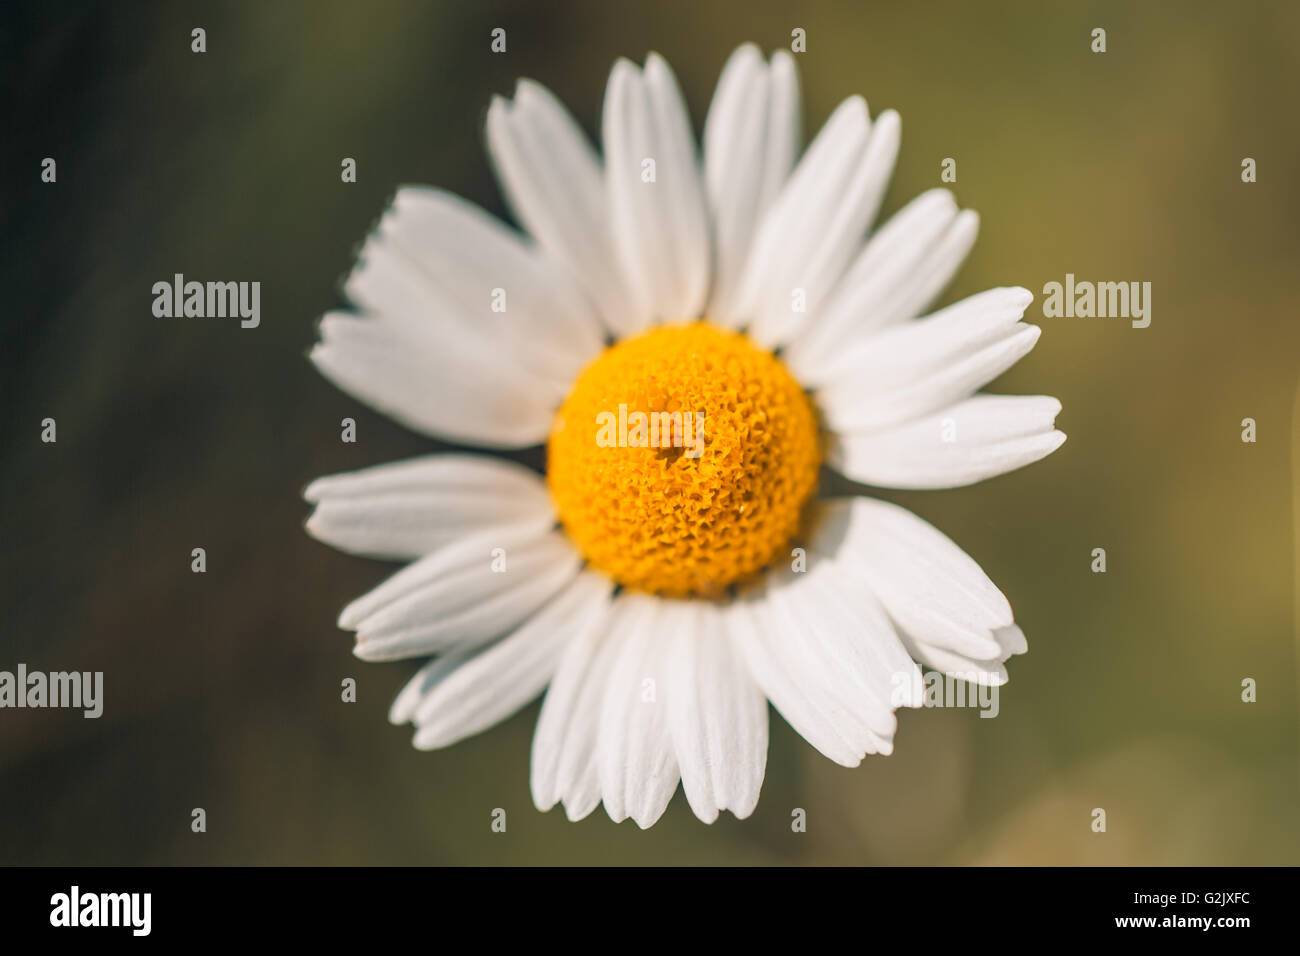 Nahaufnahme von einer schönen gelben und weißen Marguerite Daisy Blume Stockfoto